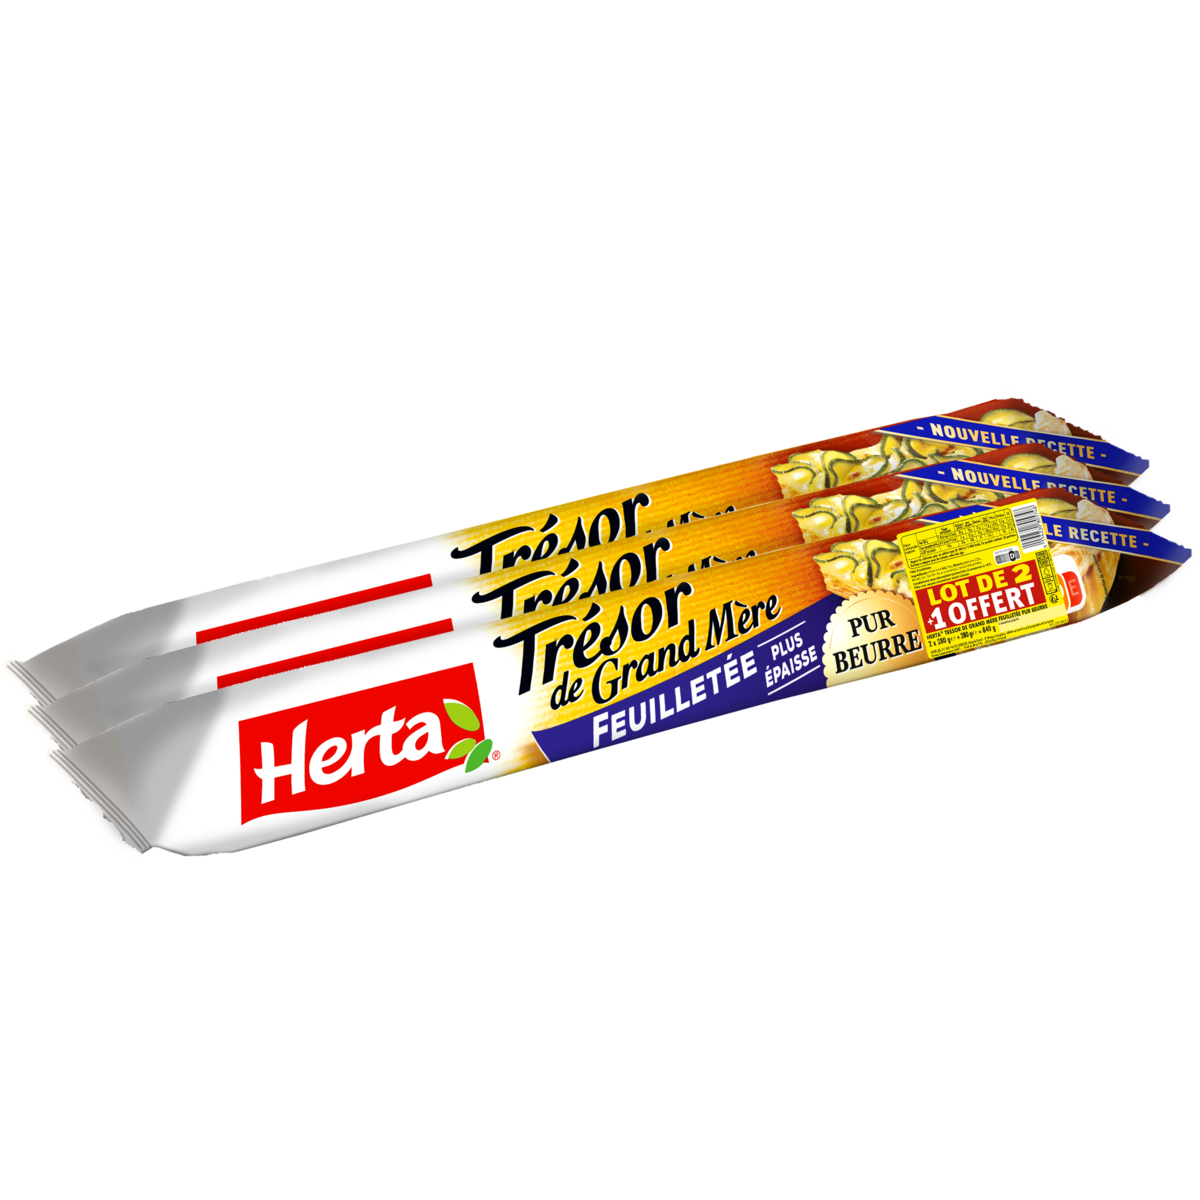 HERTA Pâte feuilletée pur beurre 2 +1 offertes 3x280g